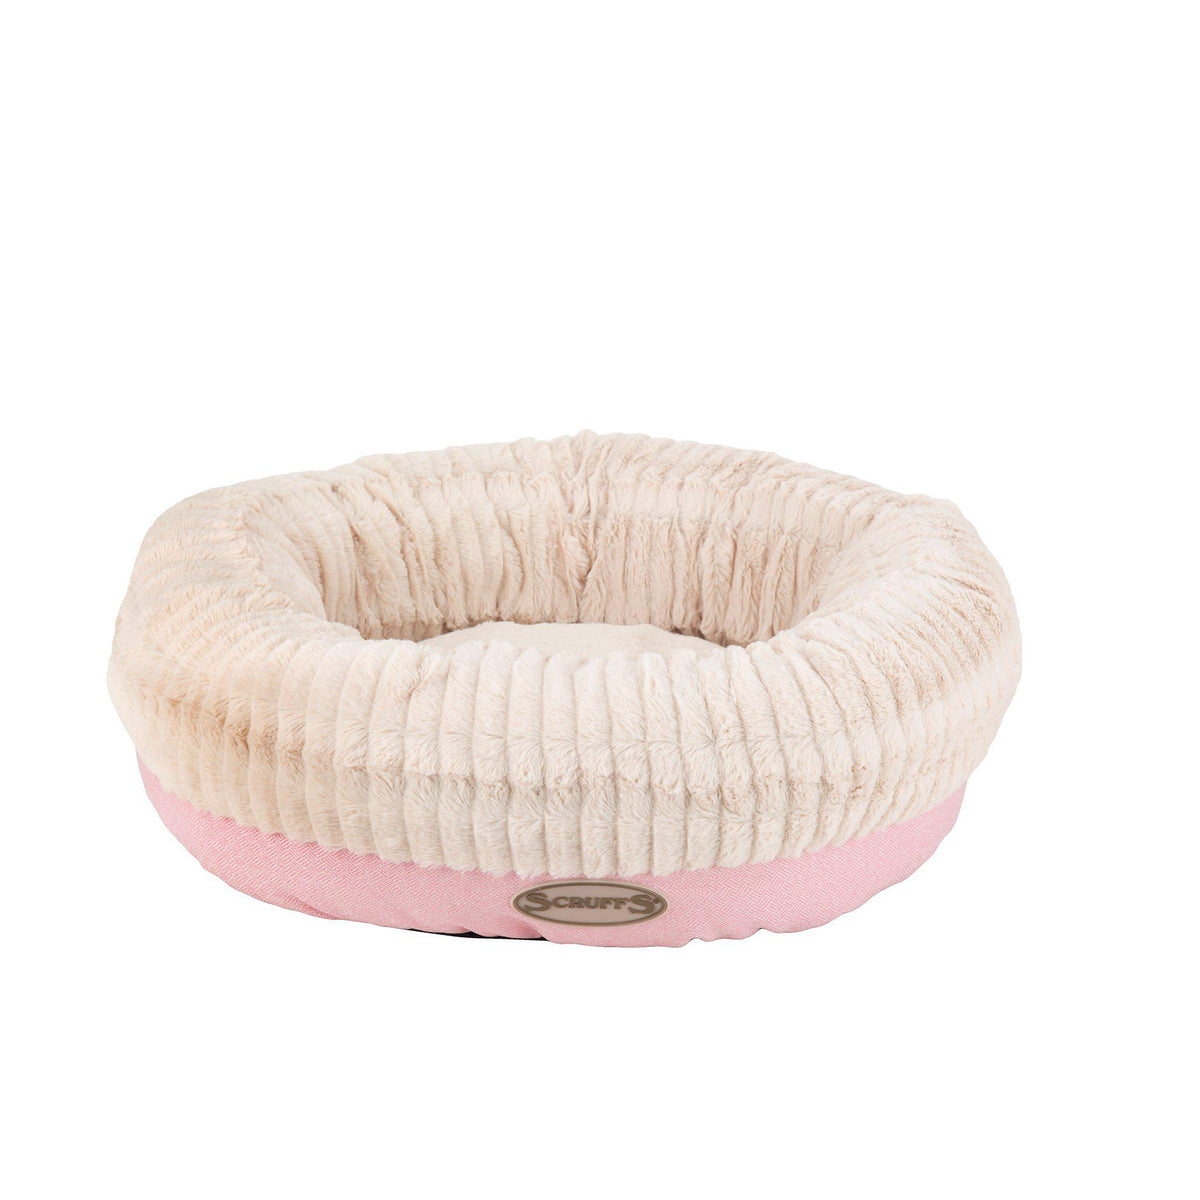 Ellen Donut Bed - ComfyPet Products